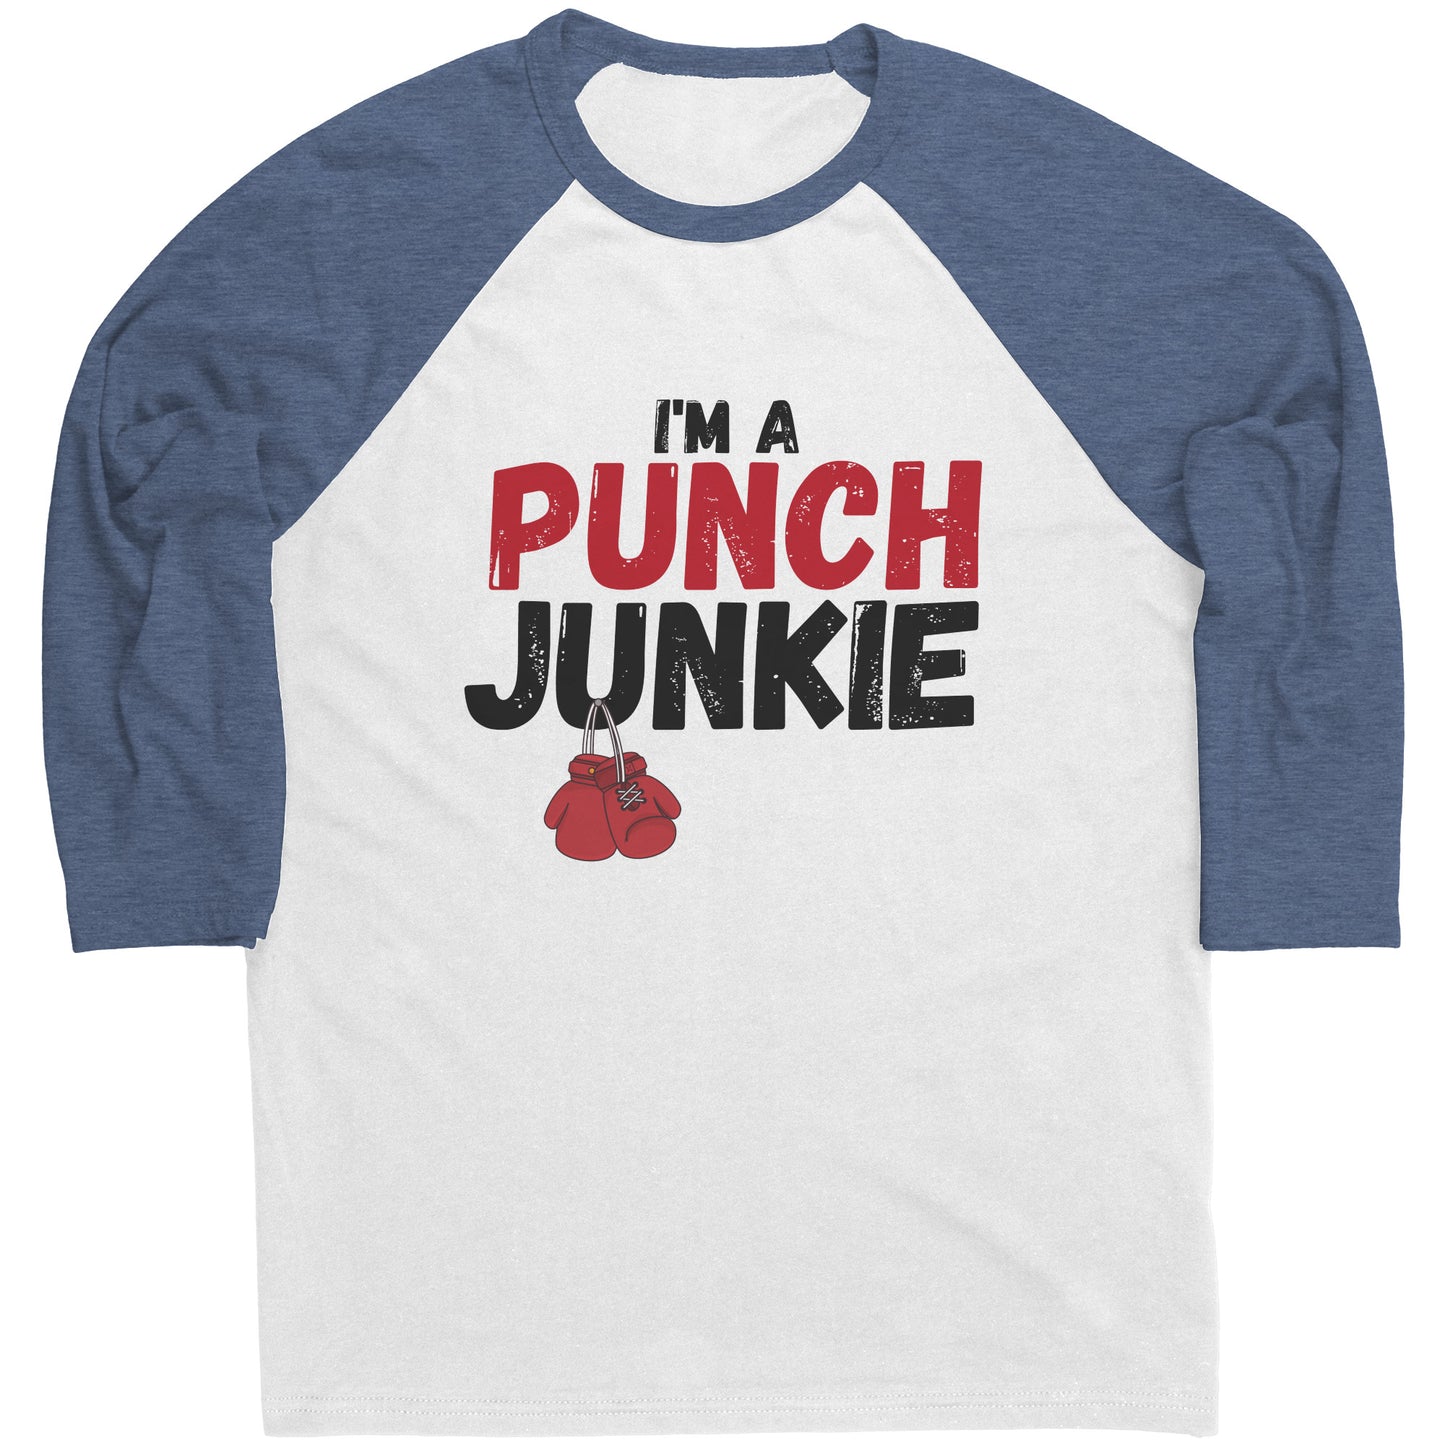 The "I'm a Punch Junkie" Raglan Shirt